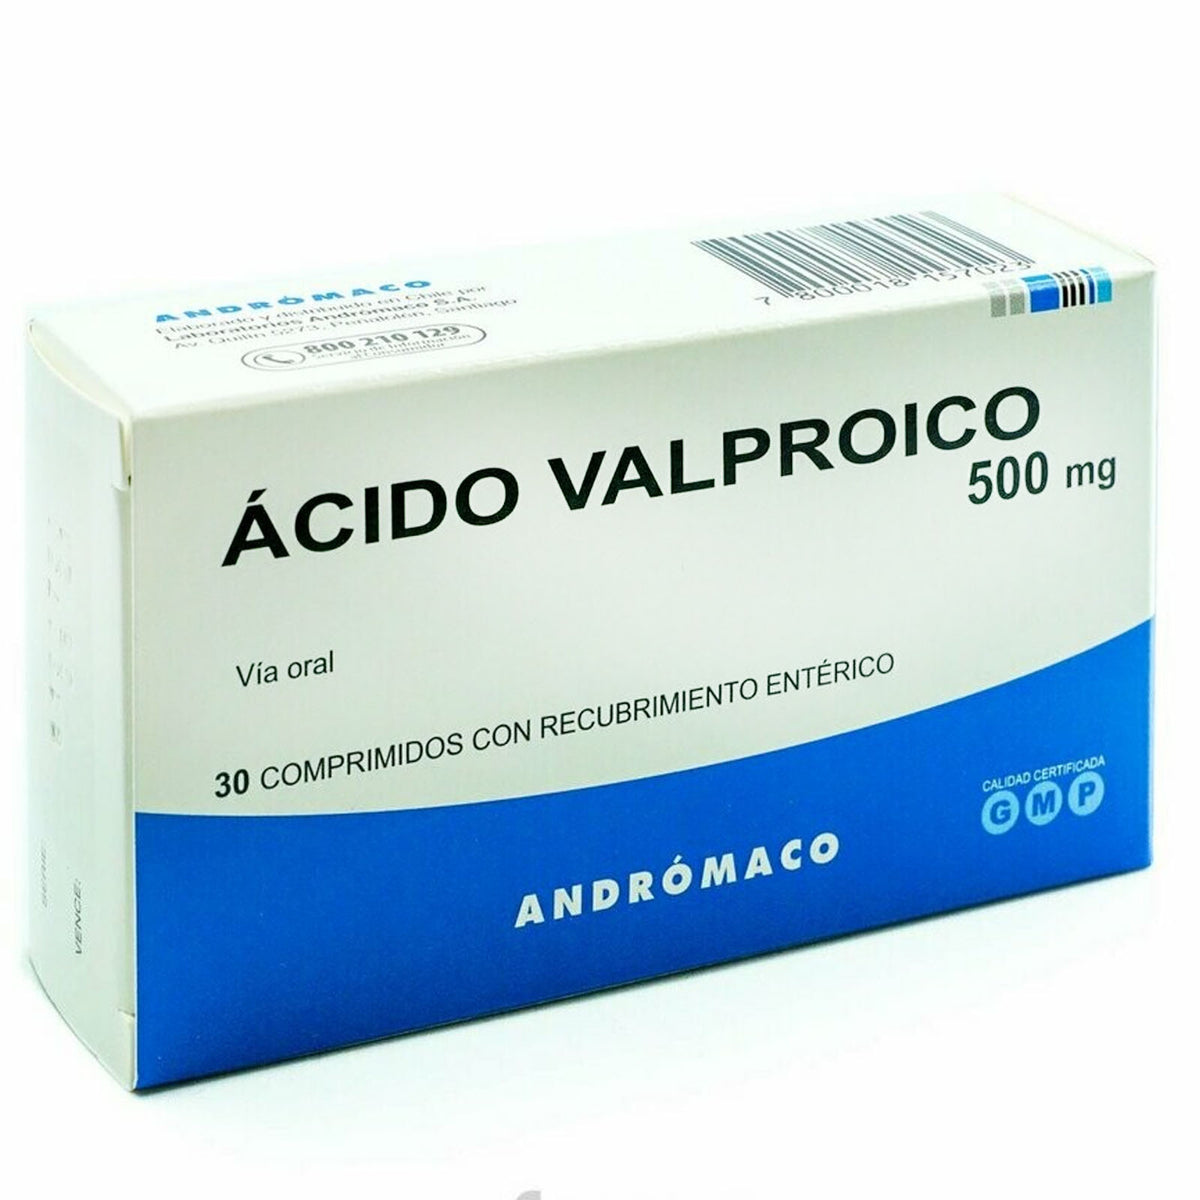 Ácido Valproico Comprimidos con Recubrimiento Entérico 500mg